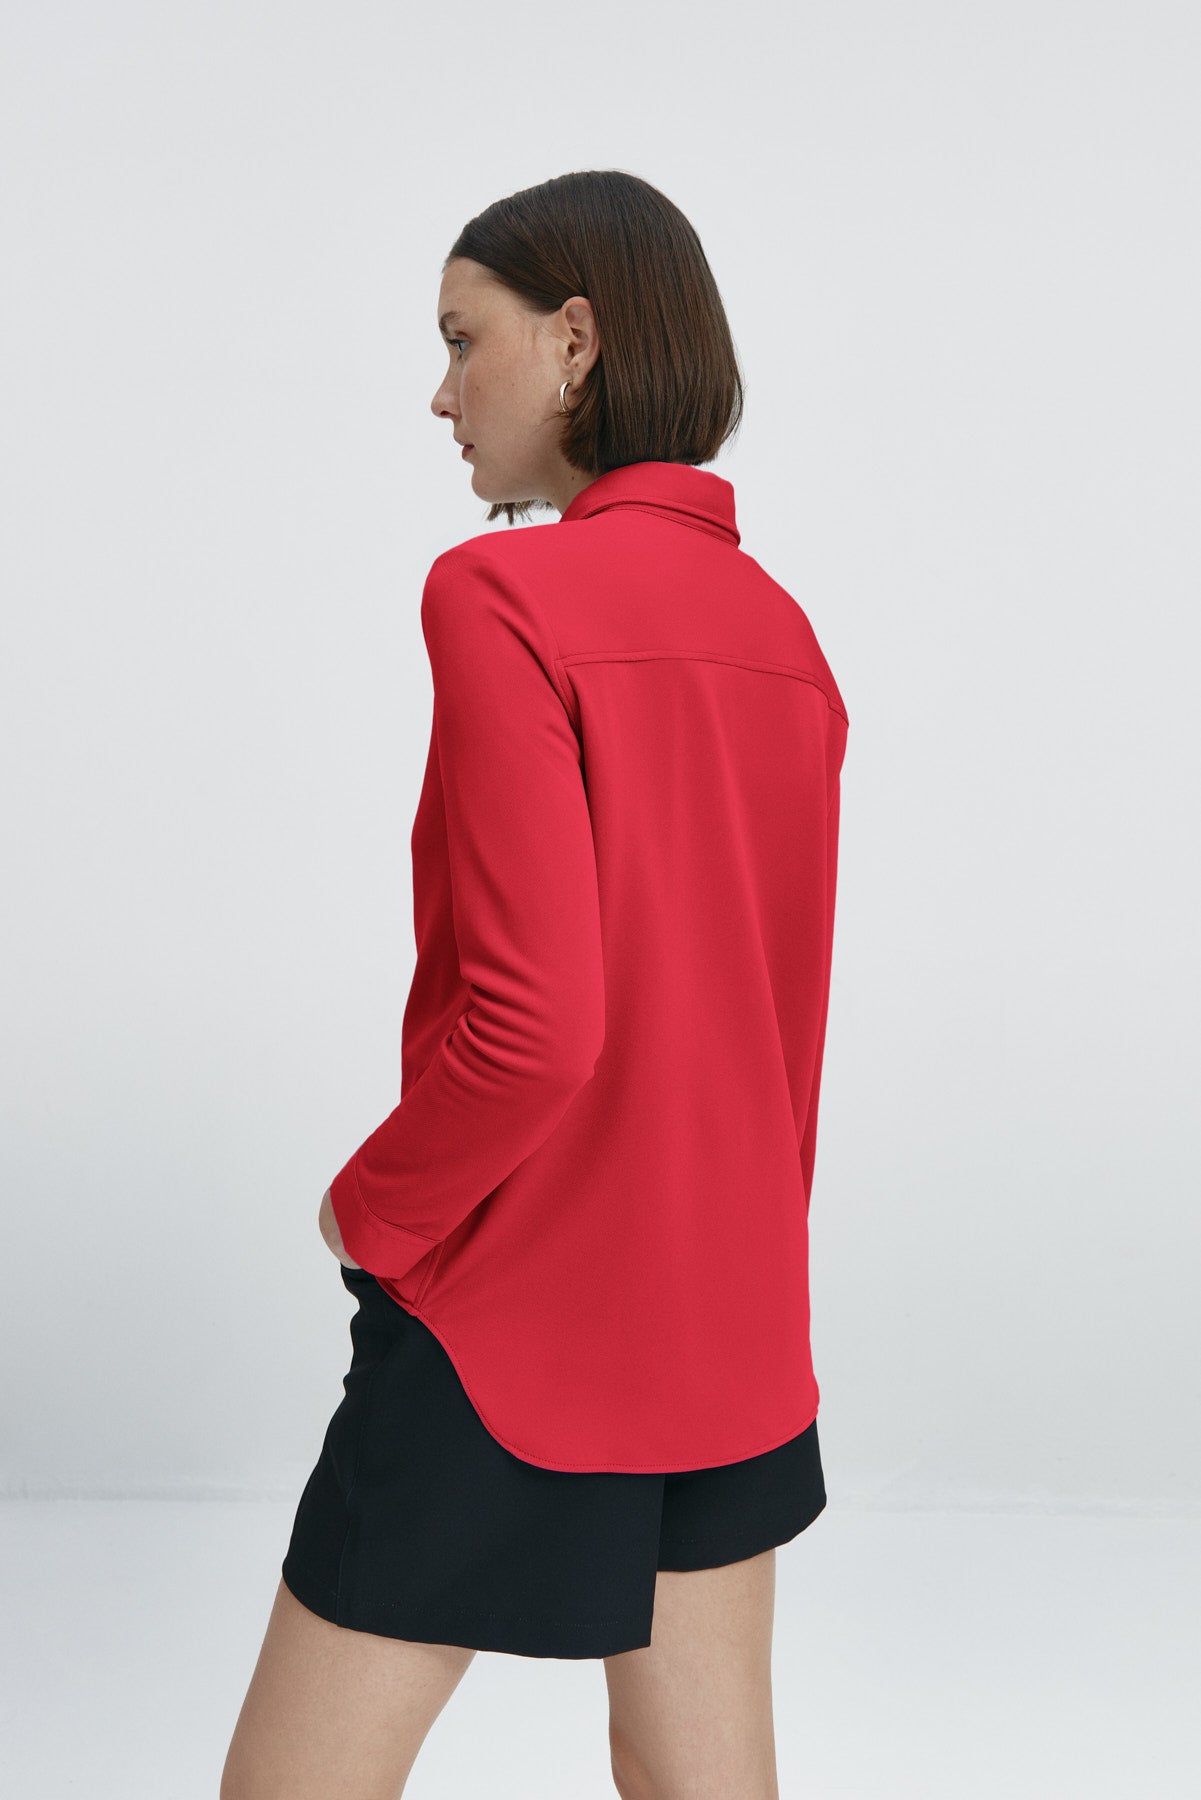 Camisa rojo atlanta oversize de Sepiia, elegante y resistente a manchas y arrugas. Foto espalda